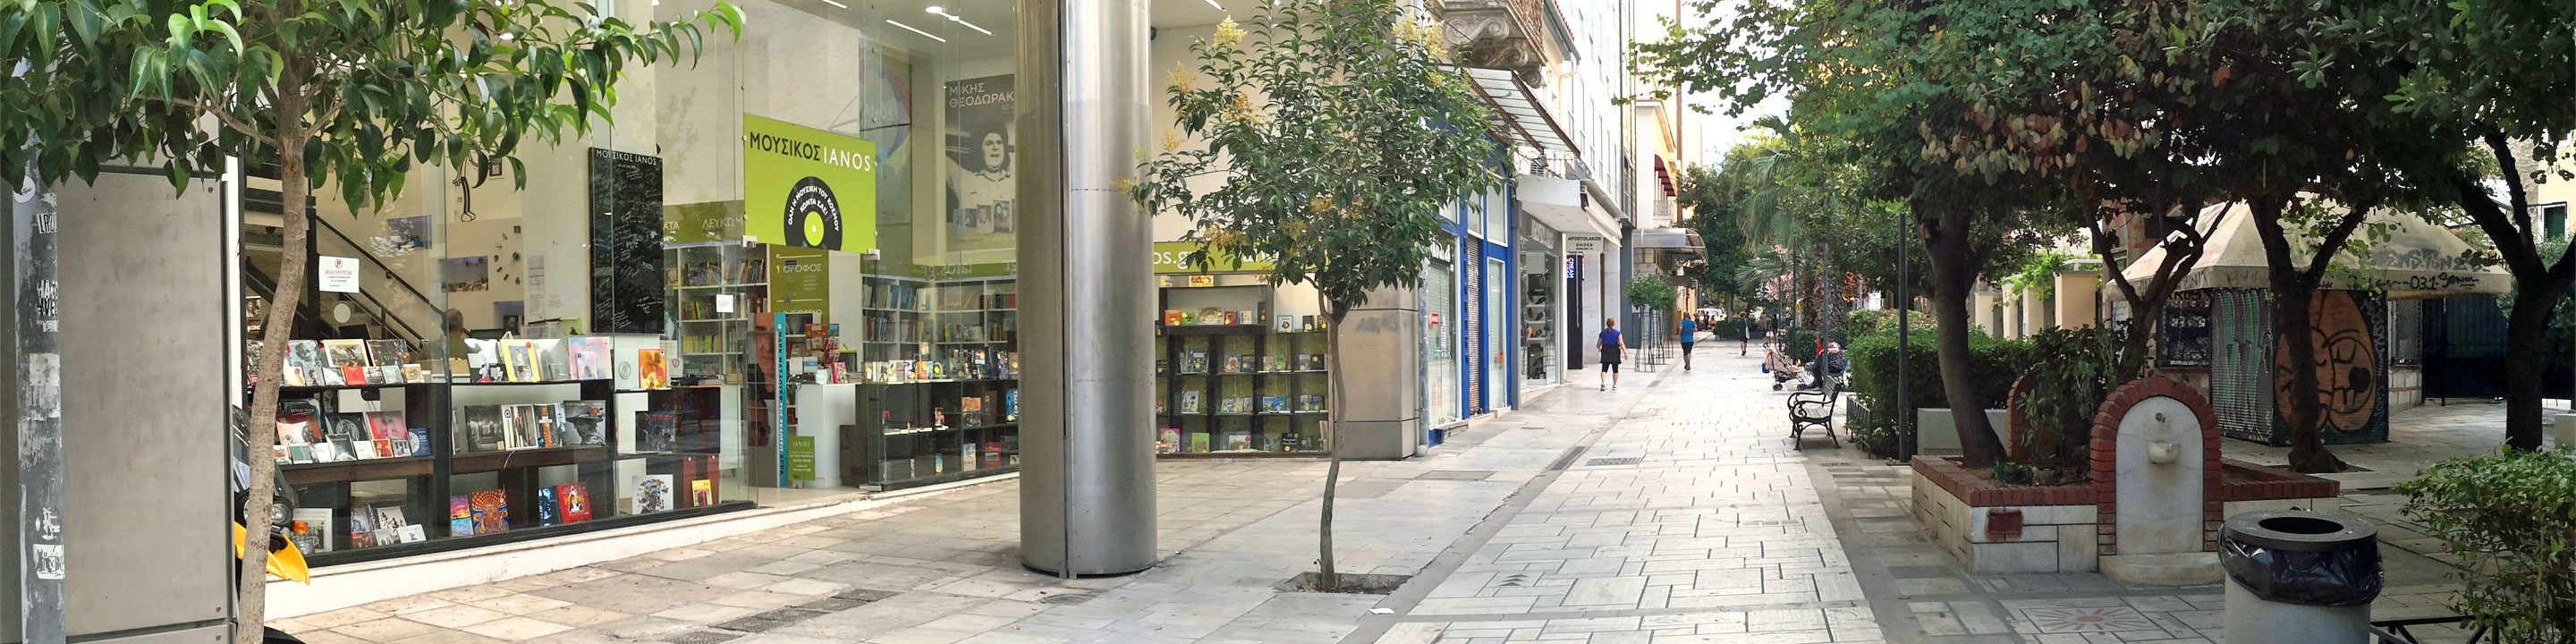 Aiolou Street, Athens